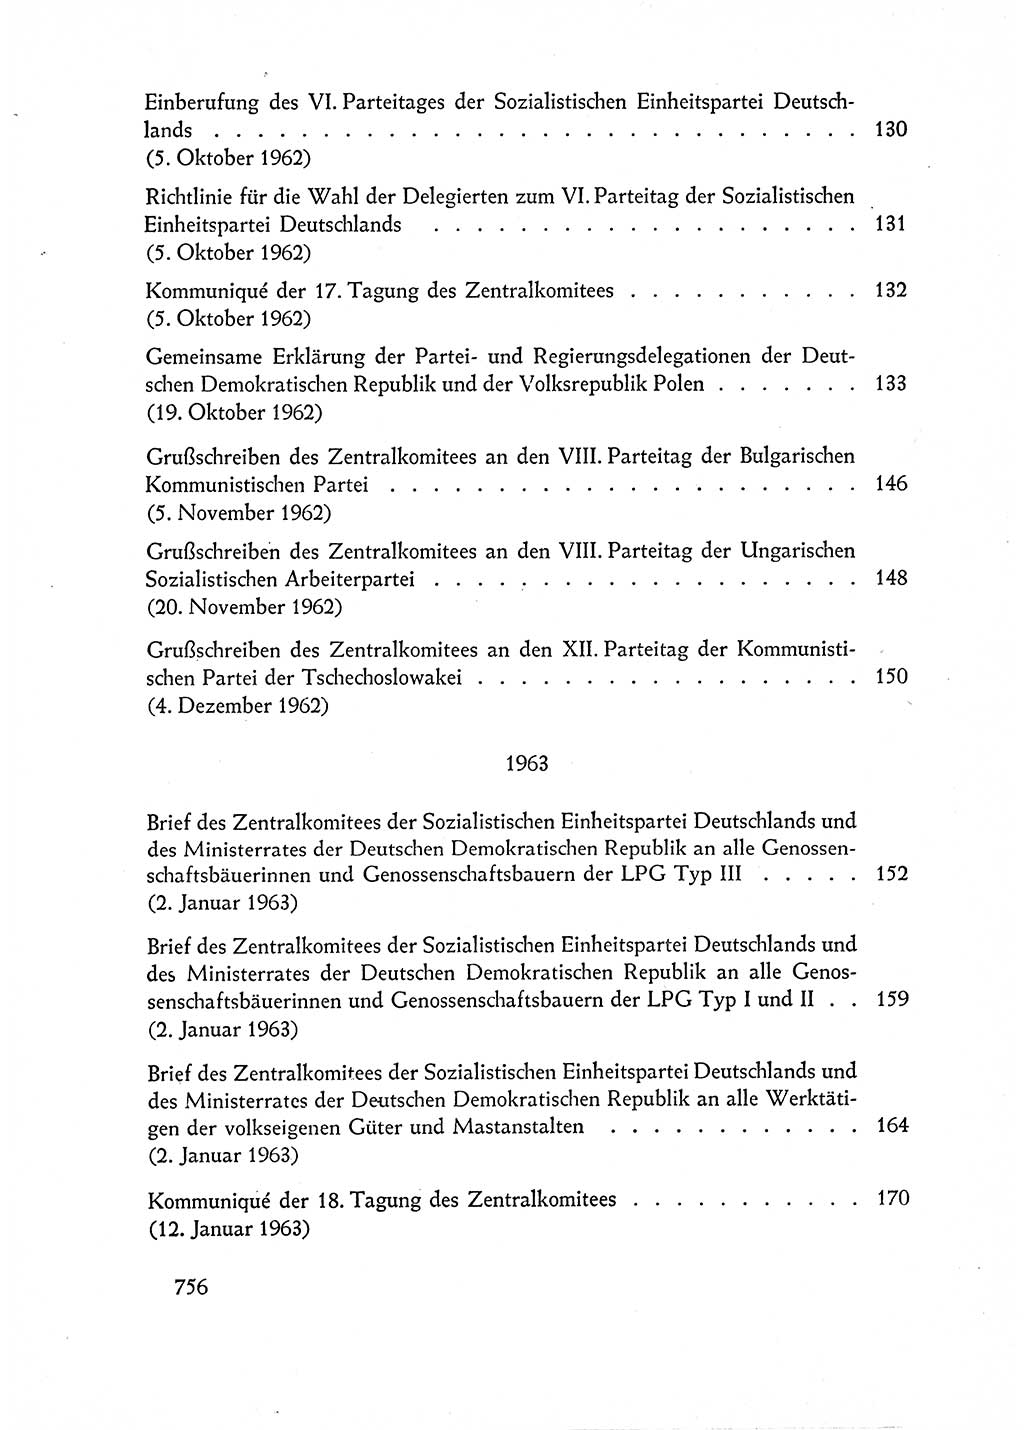 Dokumente der Sozialistischen Einheitspartei Deutschlands (SED) [Deutsche Demokratische Republik (DDR)] 1962-1963, Seite 756 (Dok. SED DDR 1962-1963, S. 756)